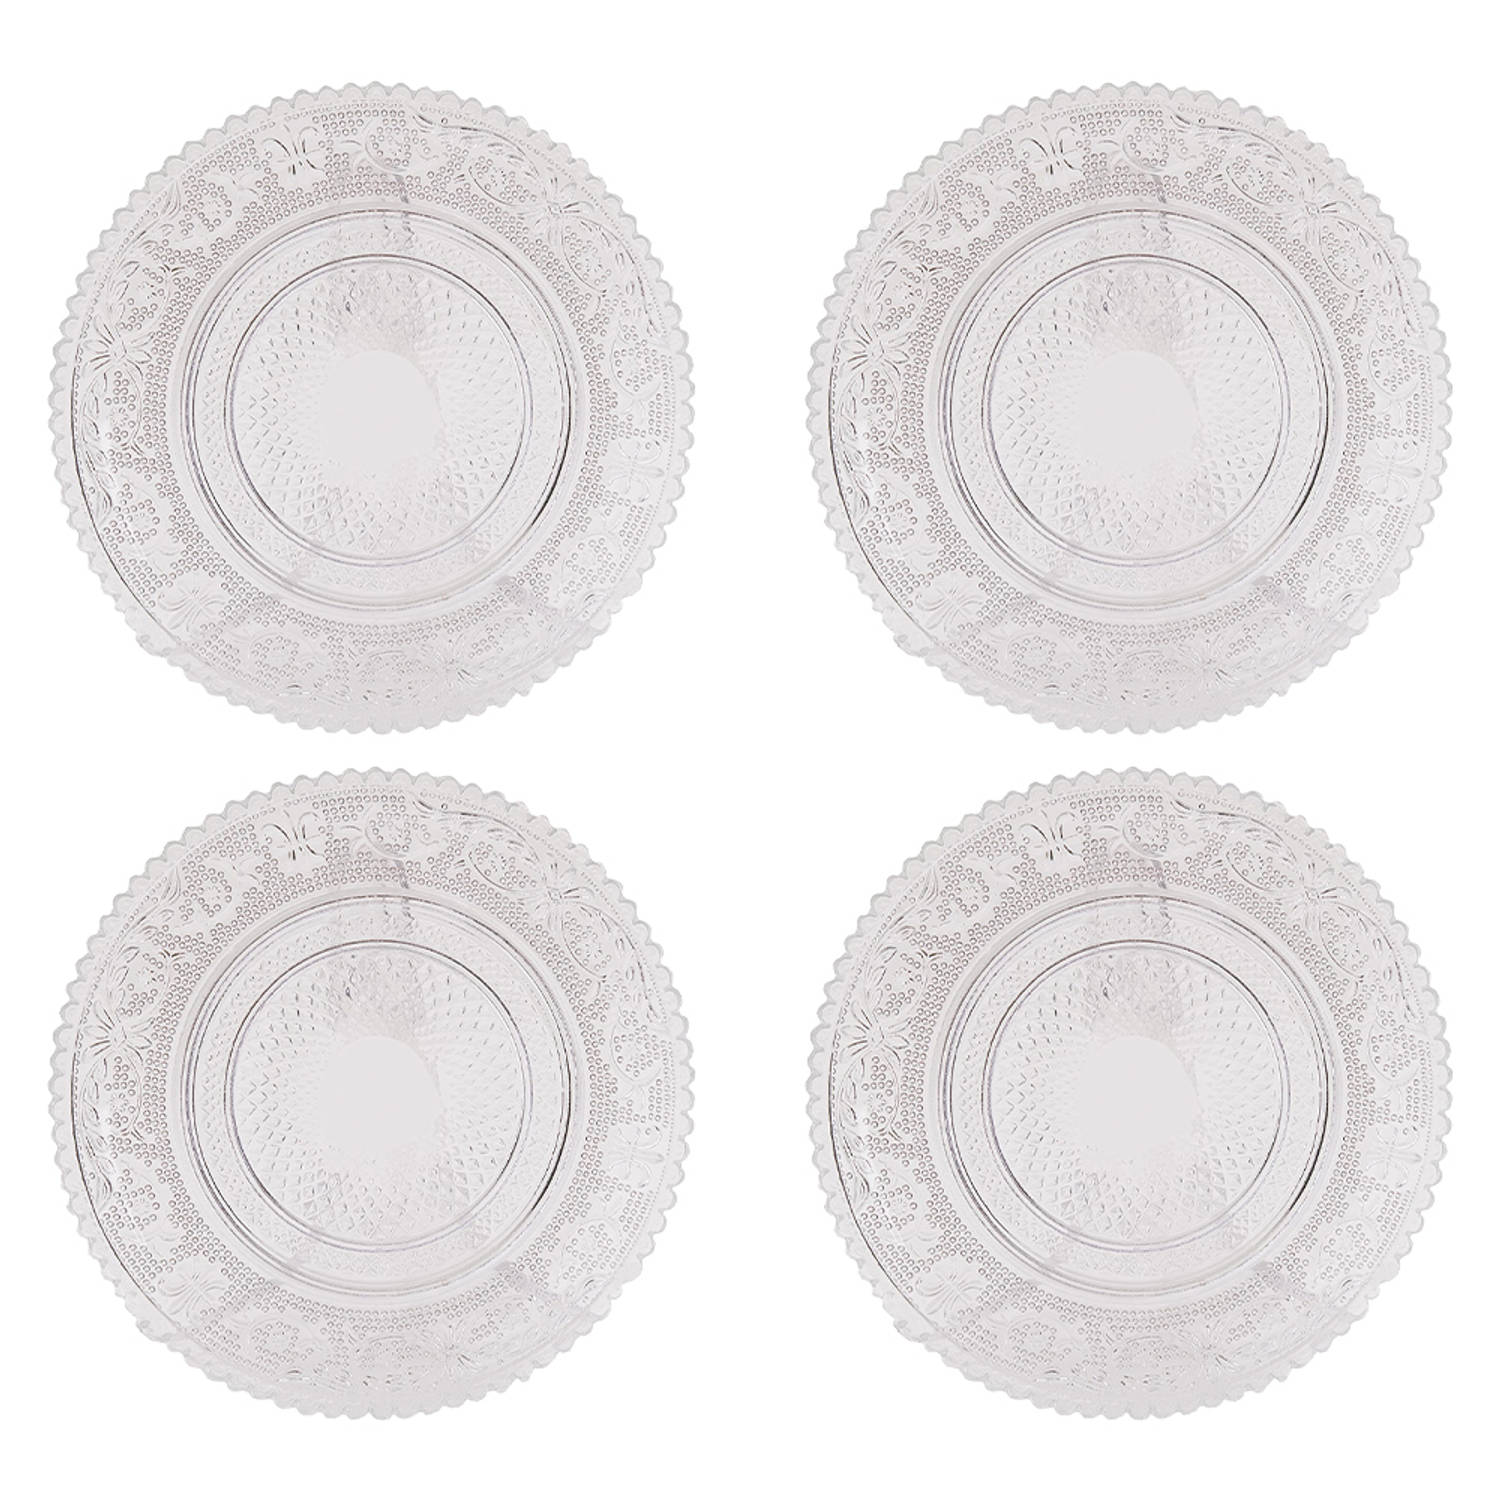 HAES DECO - Ontbijtborden set van 4 - Formaat Ø 15x1 cm - kleuren Transparant - Bedrukt Glas - Collectie: Grandmother's Love - Servies, kleine borden